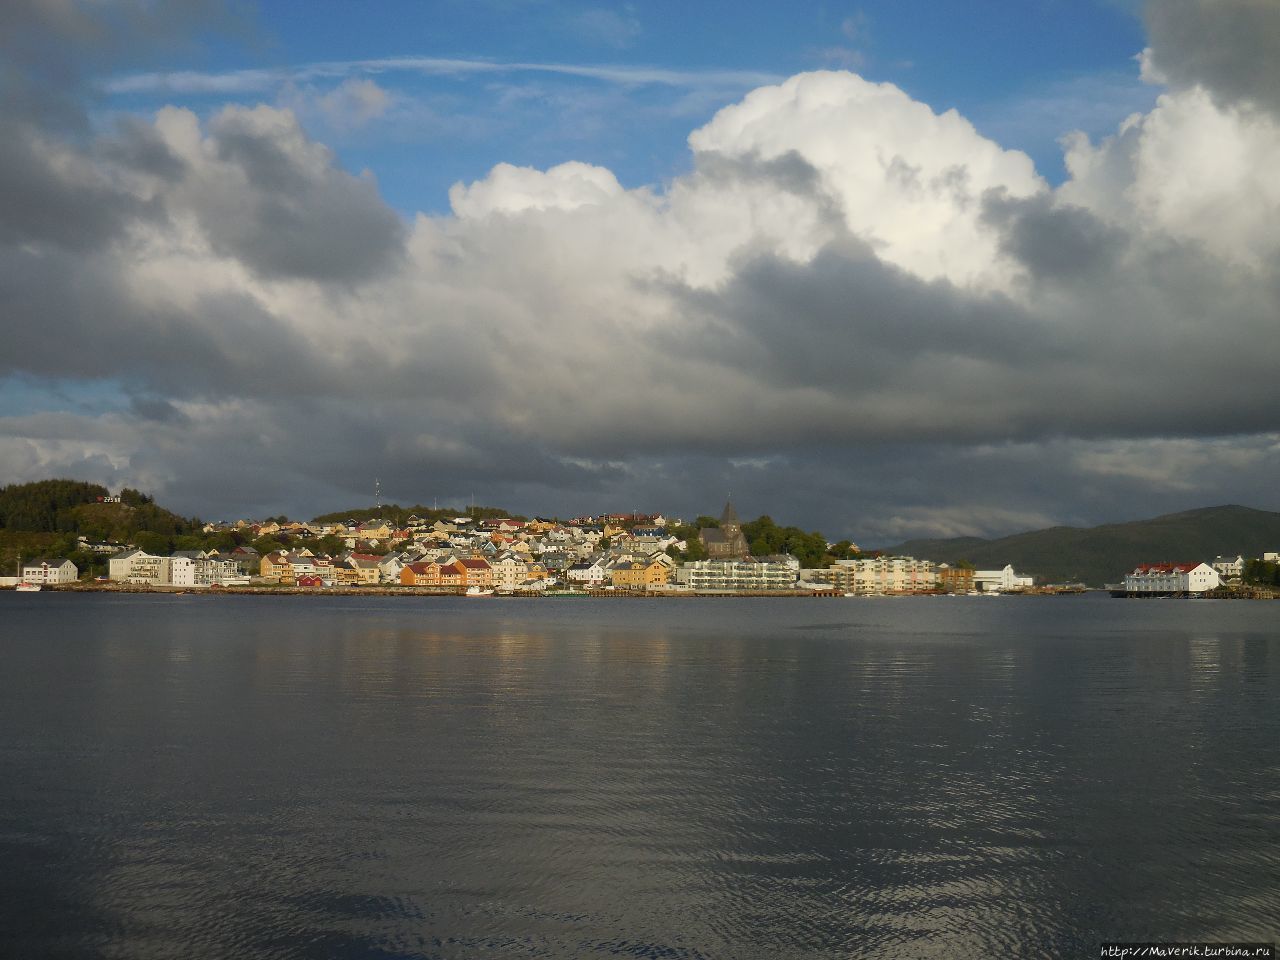 Кристиансунн — знакомство с портовым городом Кристиансунн, Норвегия